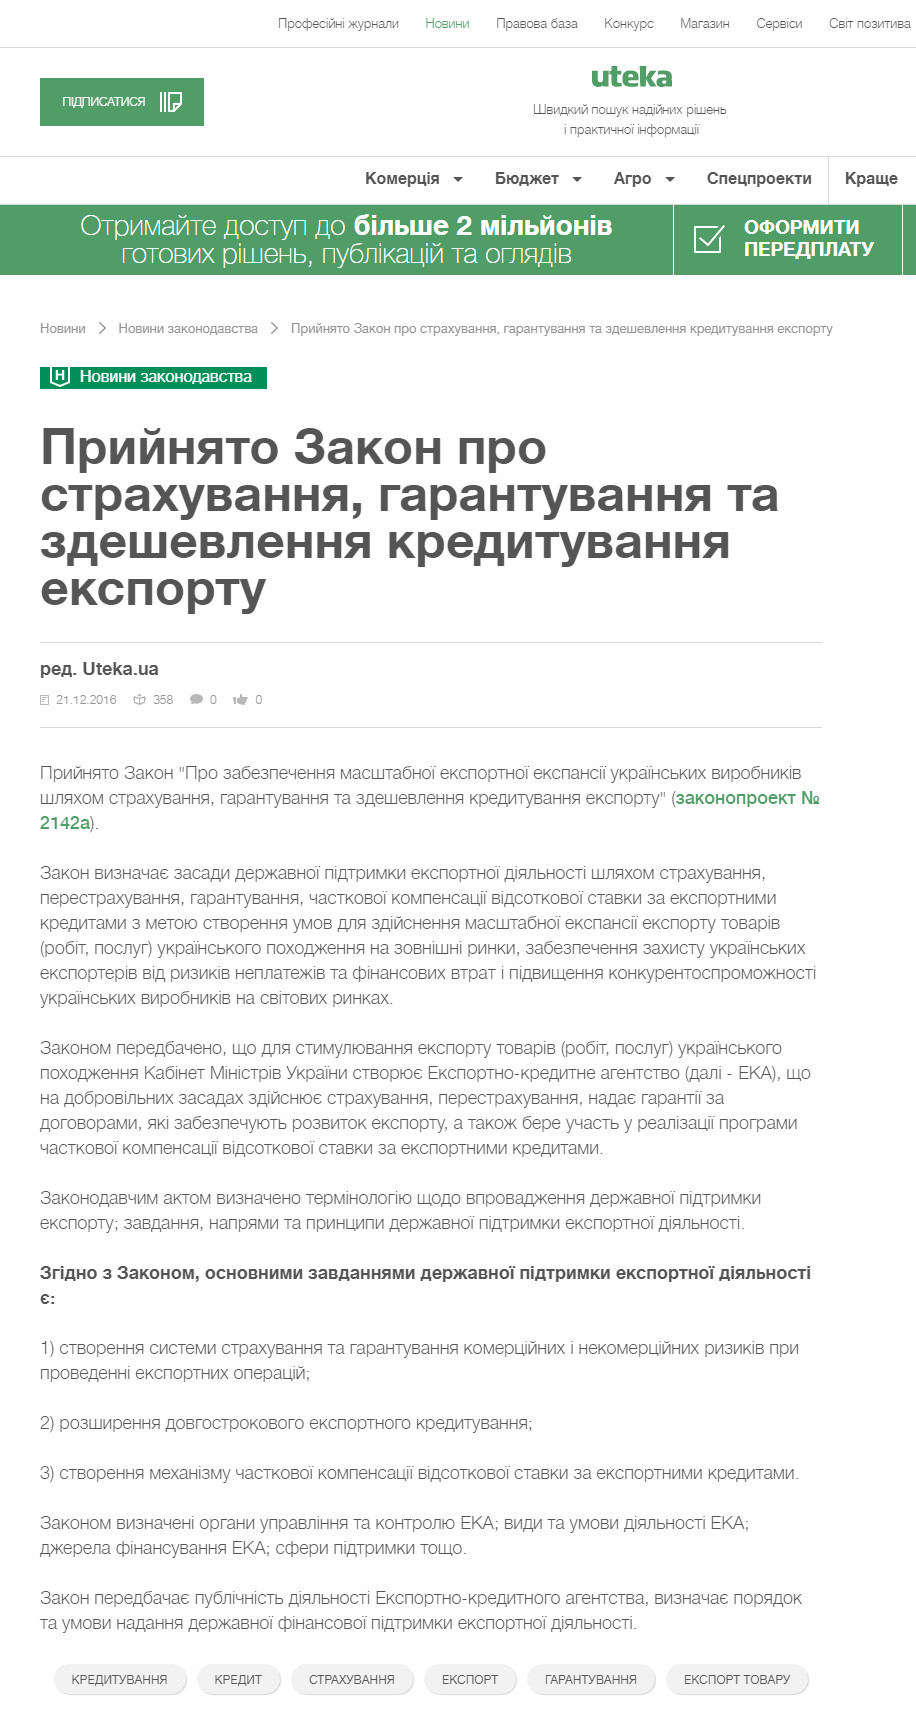 https://uteka.ua/ua/publication/news-14-novosti-zakonodatelstva-1-prinyat-zakon-o-straxovanii-garantirovanii-i-udeshevlenii-kreditovaniya-eksporta